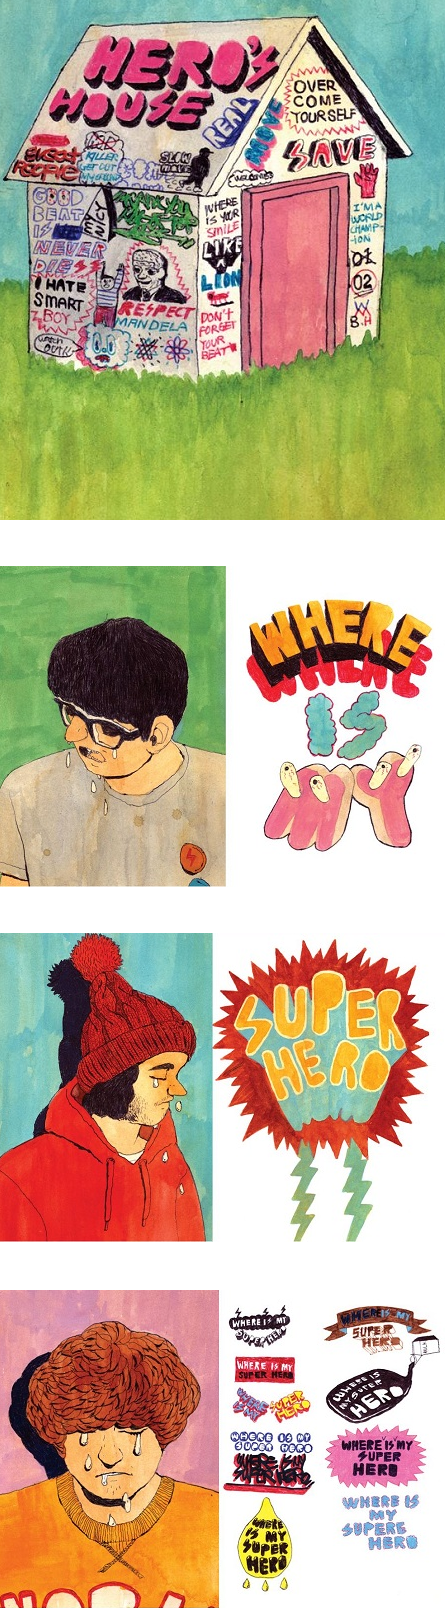 sung-mo-kang-zine-illustrations